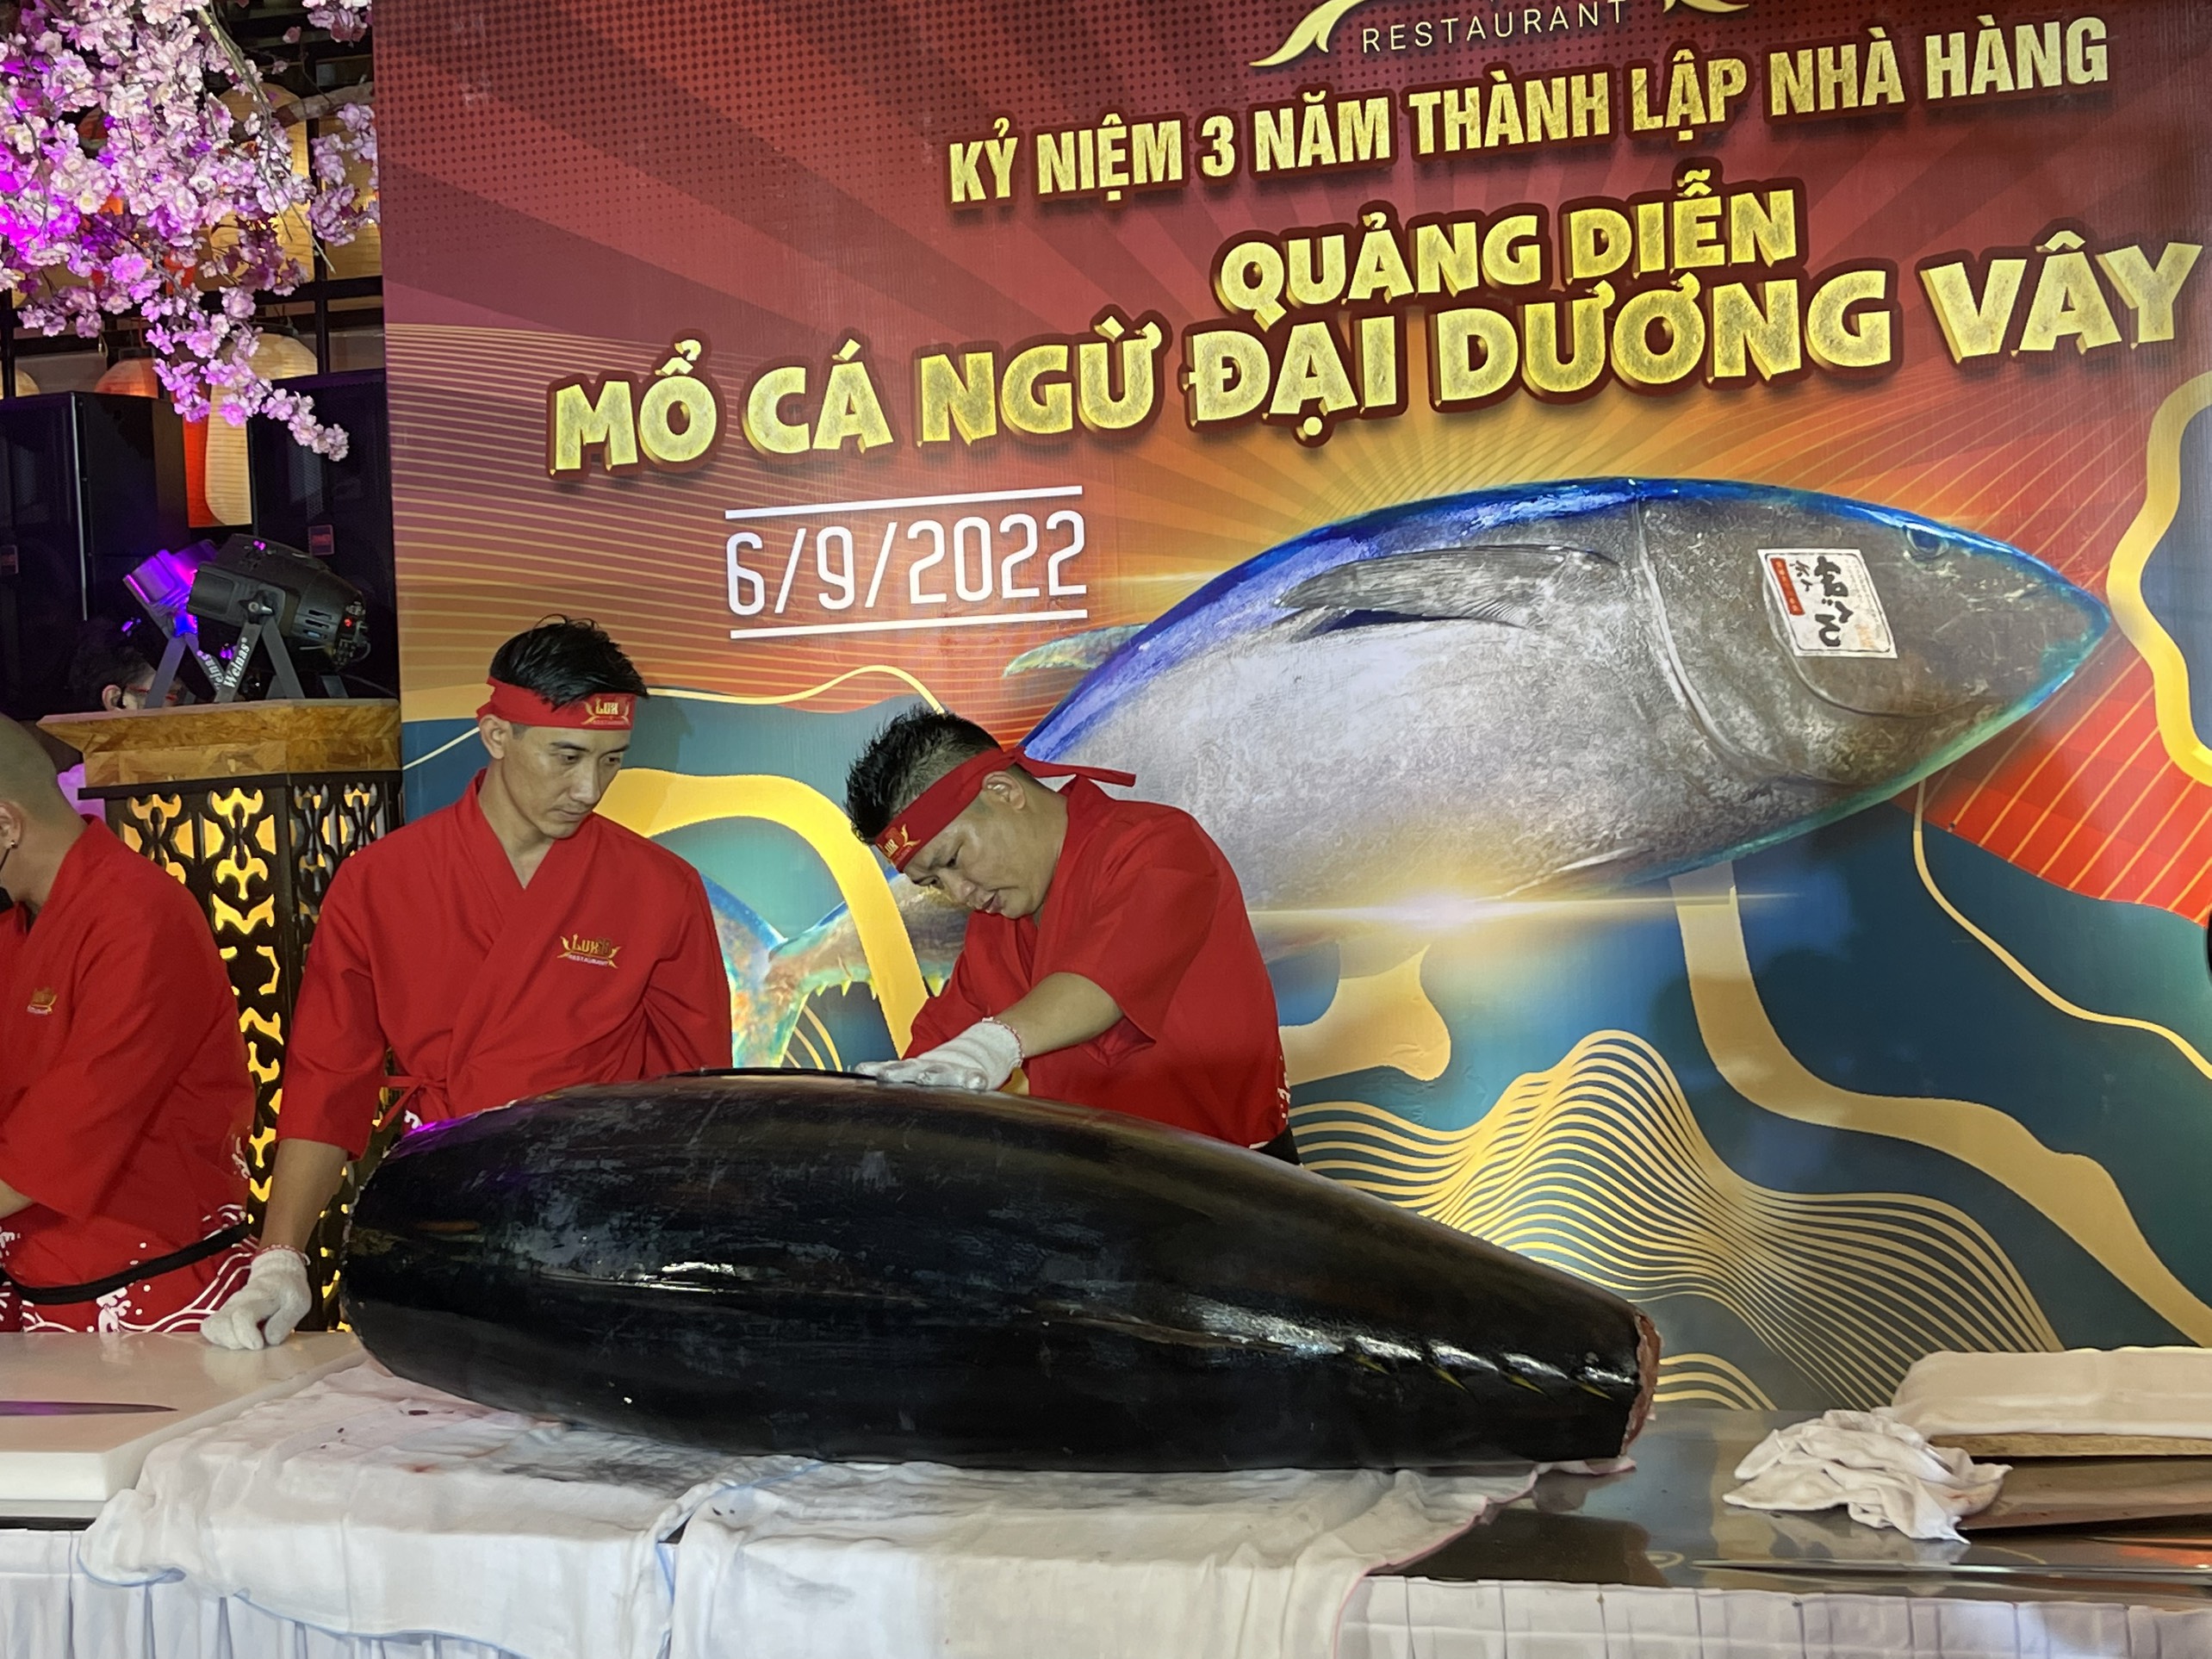 Nhà hàng Lux 68: Mổ cá ngừ đại dương nặng 168kg mừng kỷ niệm 3 năm thành lập